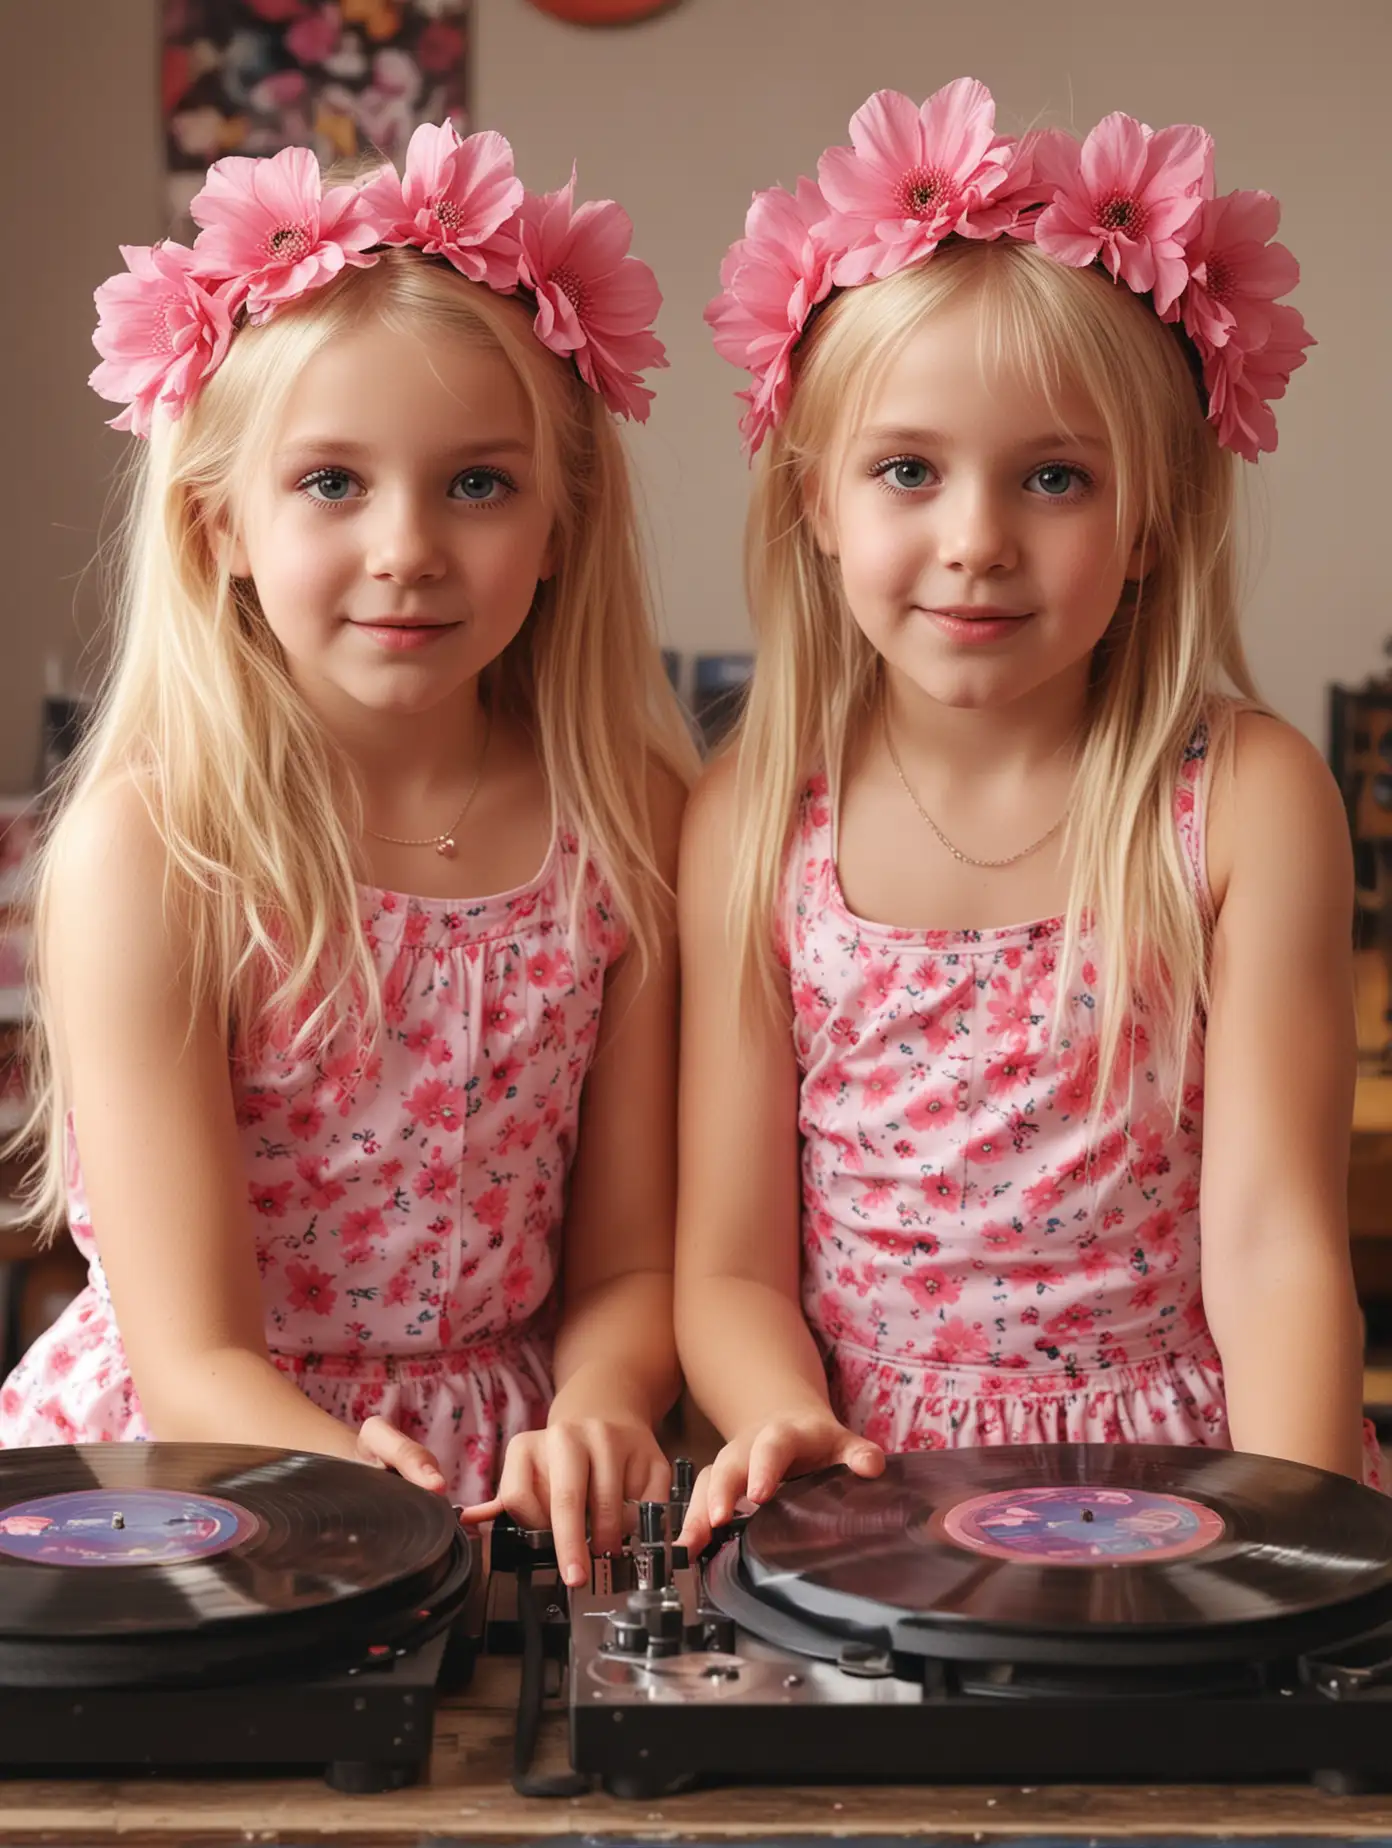 Blonde-Twin-DJs-Spinning-Vinyl-Records-at-Rockstars-Studio-Festival